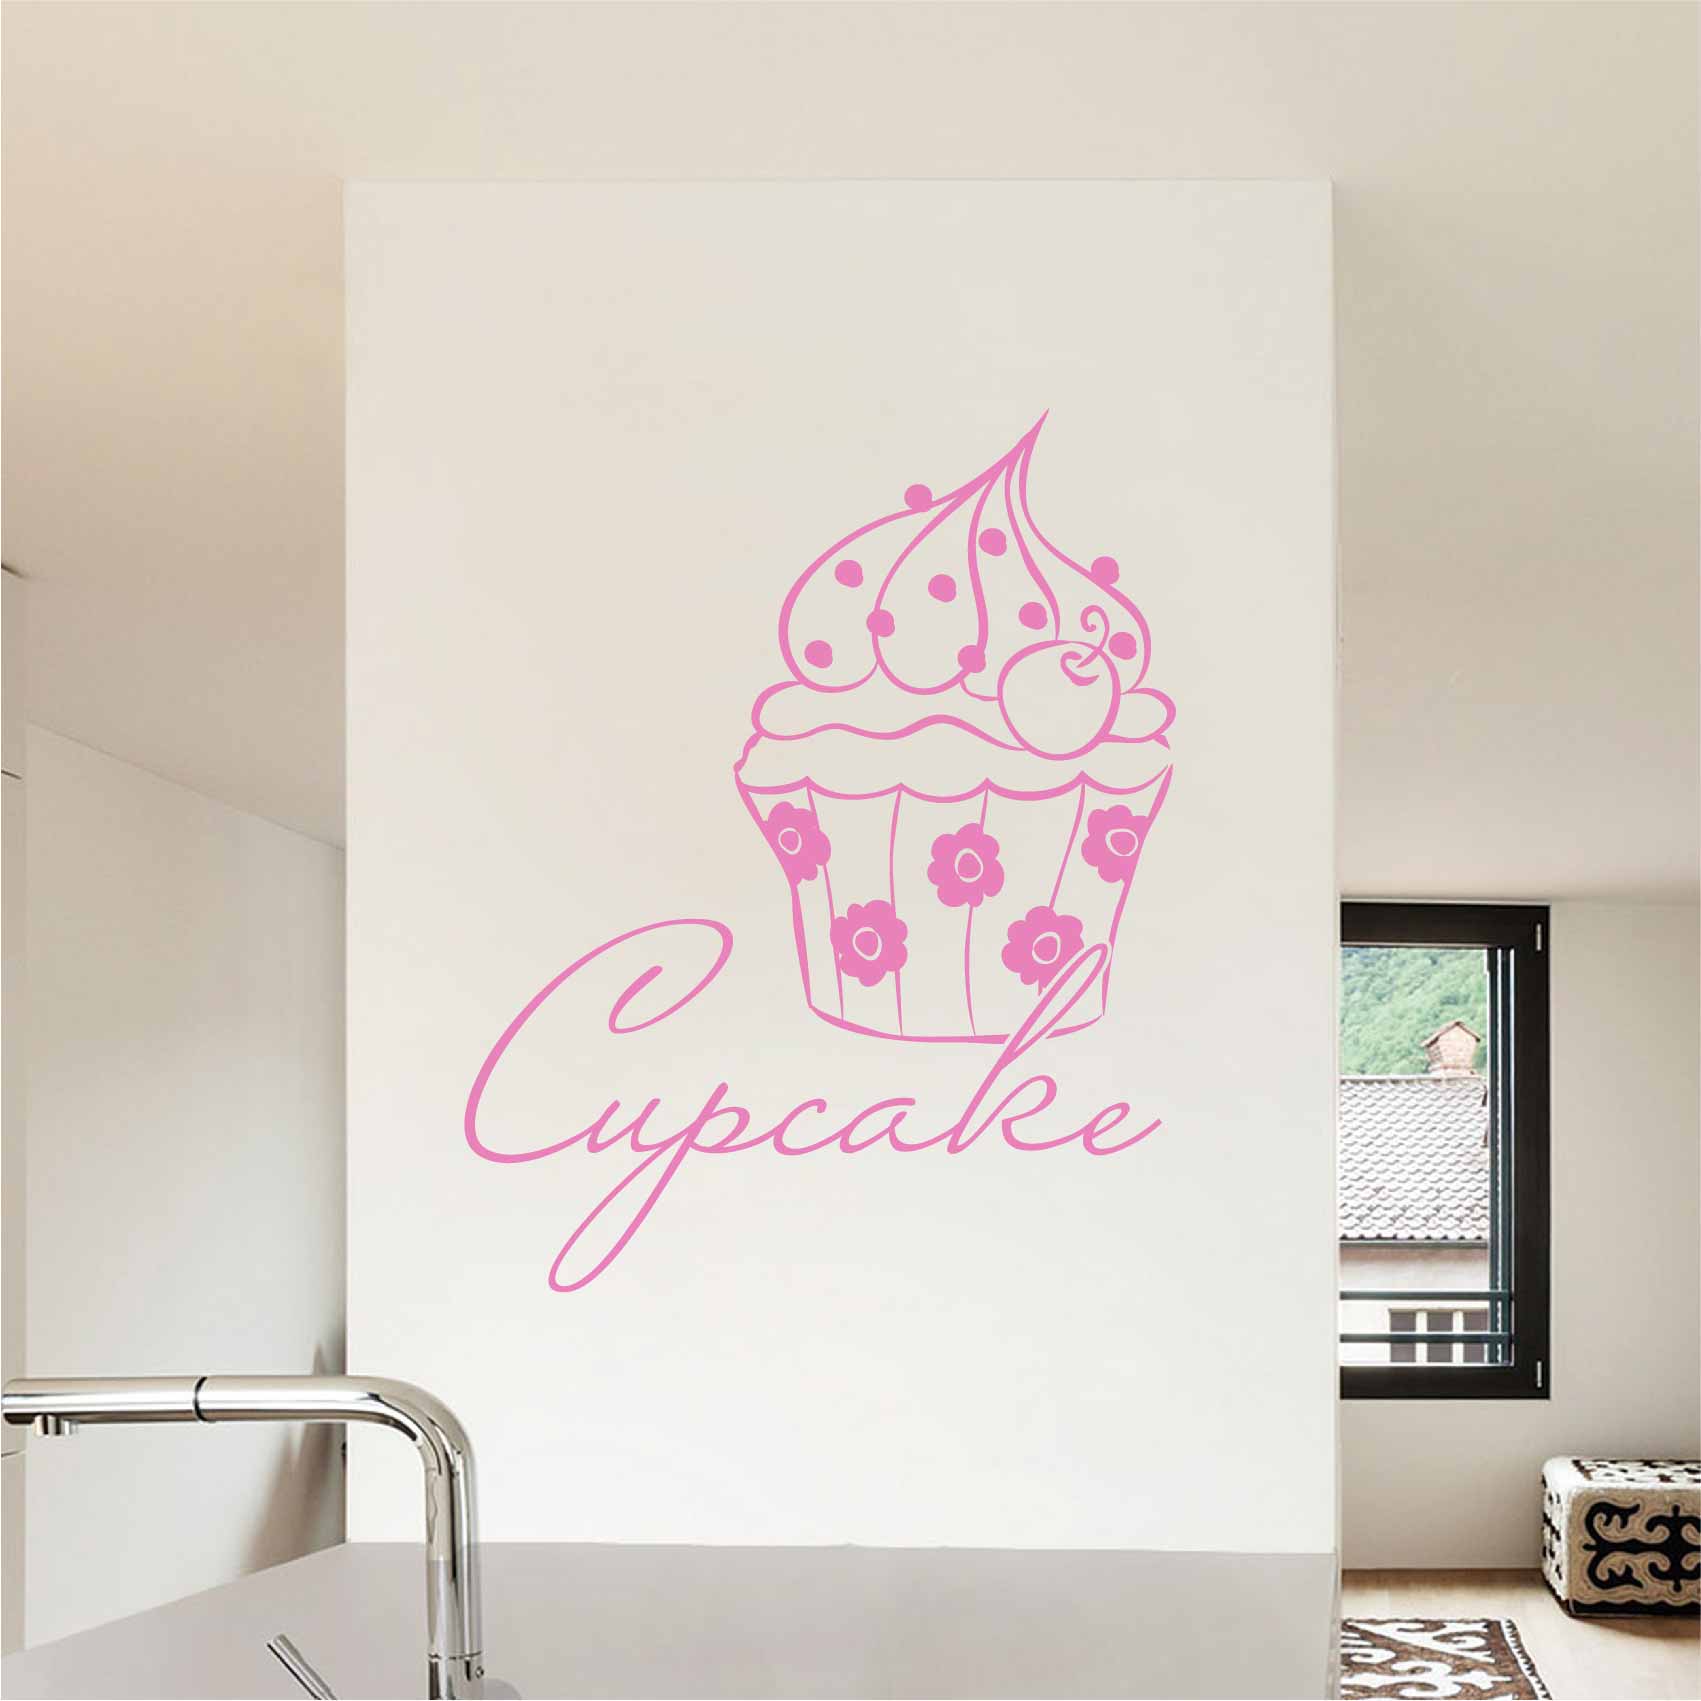 stickers-cupcake-rose-ref7cupcake-autocollant-muraux-cuisine-salle-a-manger-salon-sticker-mural-deco-gateau-cupcakes-gateaux